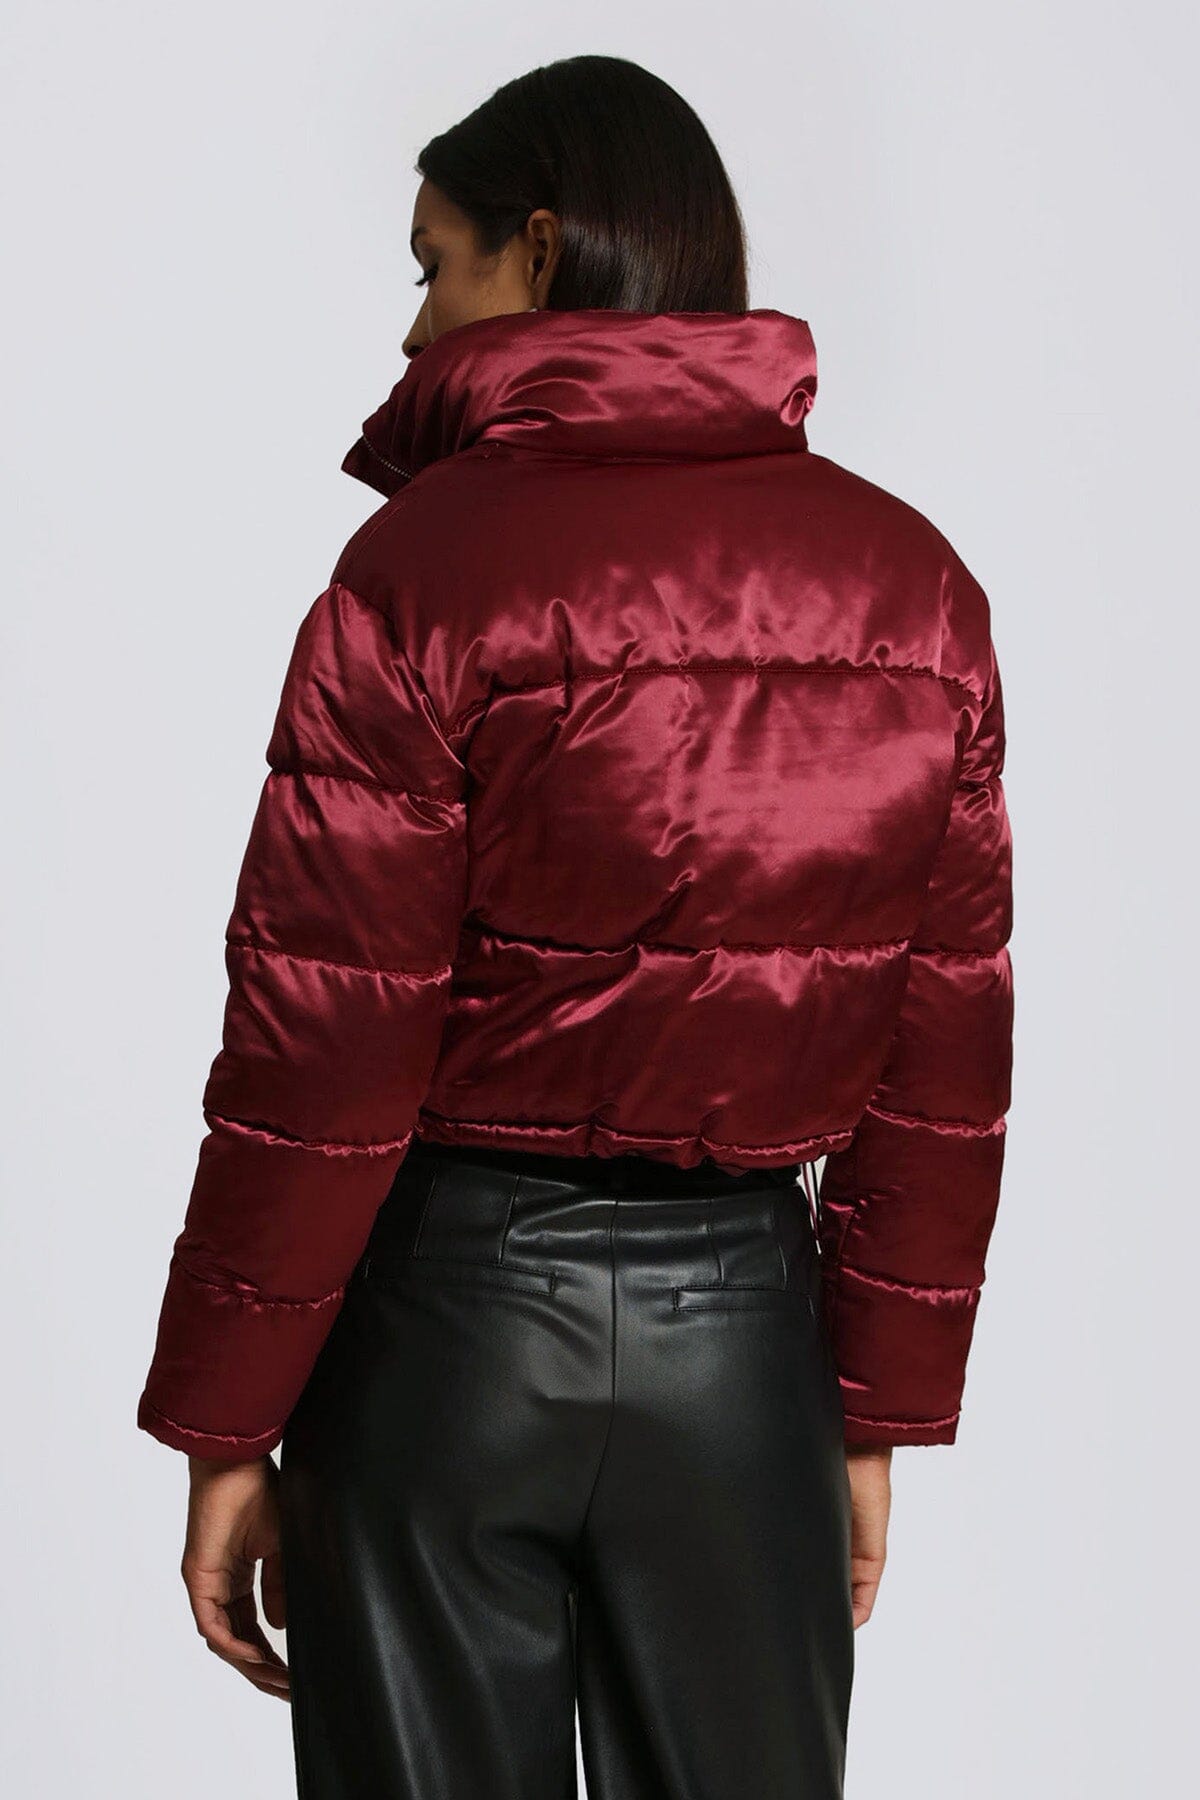 berry red cropped satin puffer jacket coat women's figure flattering cute streetwear style jackets coats